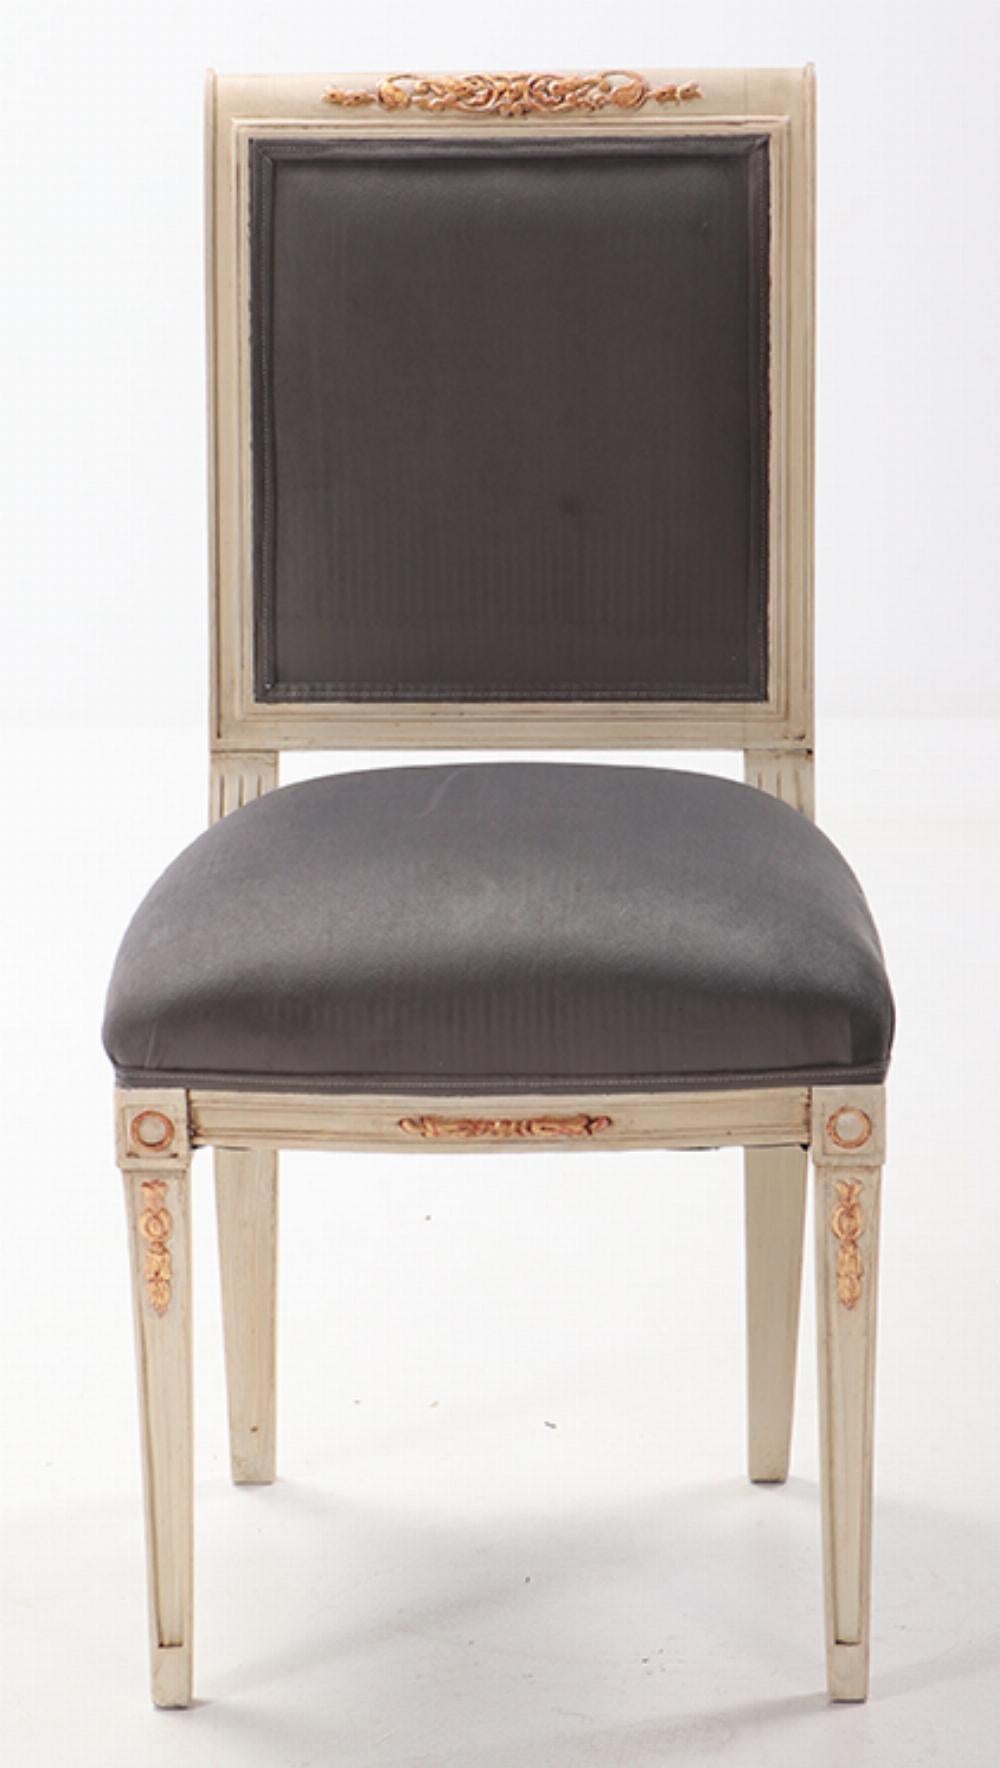 Six chaises de salle à manger de style directoire peintes et dorées vers 1940 avec tissu récent.